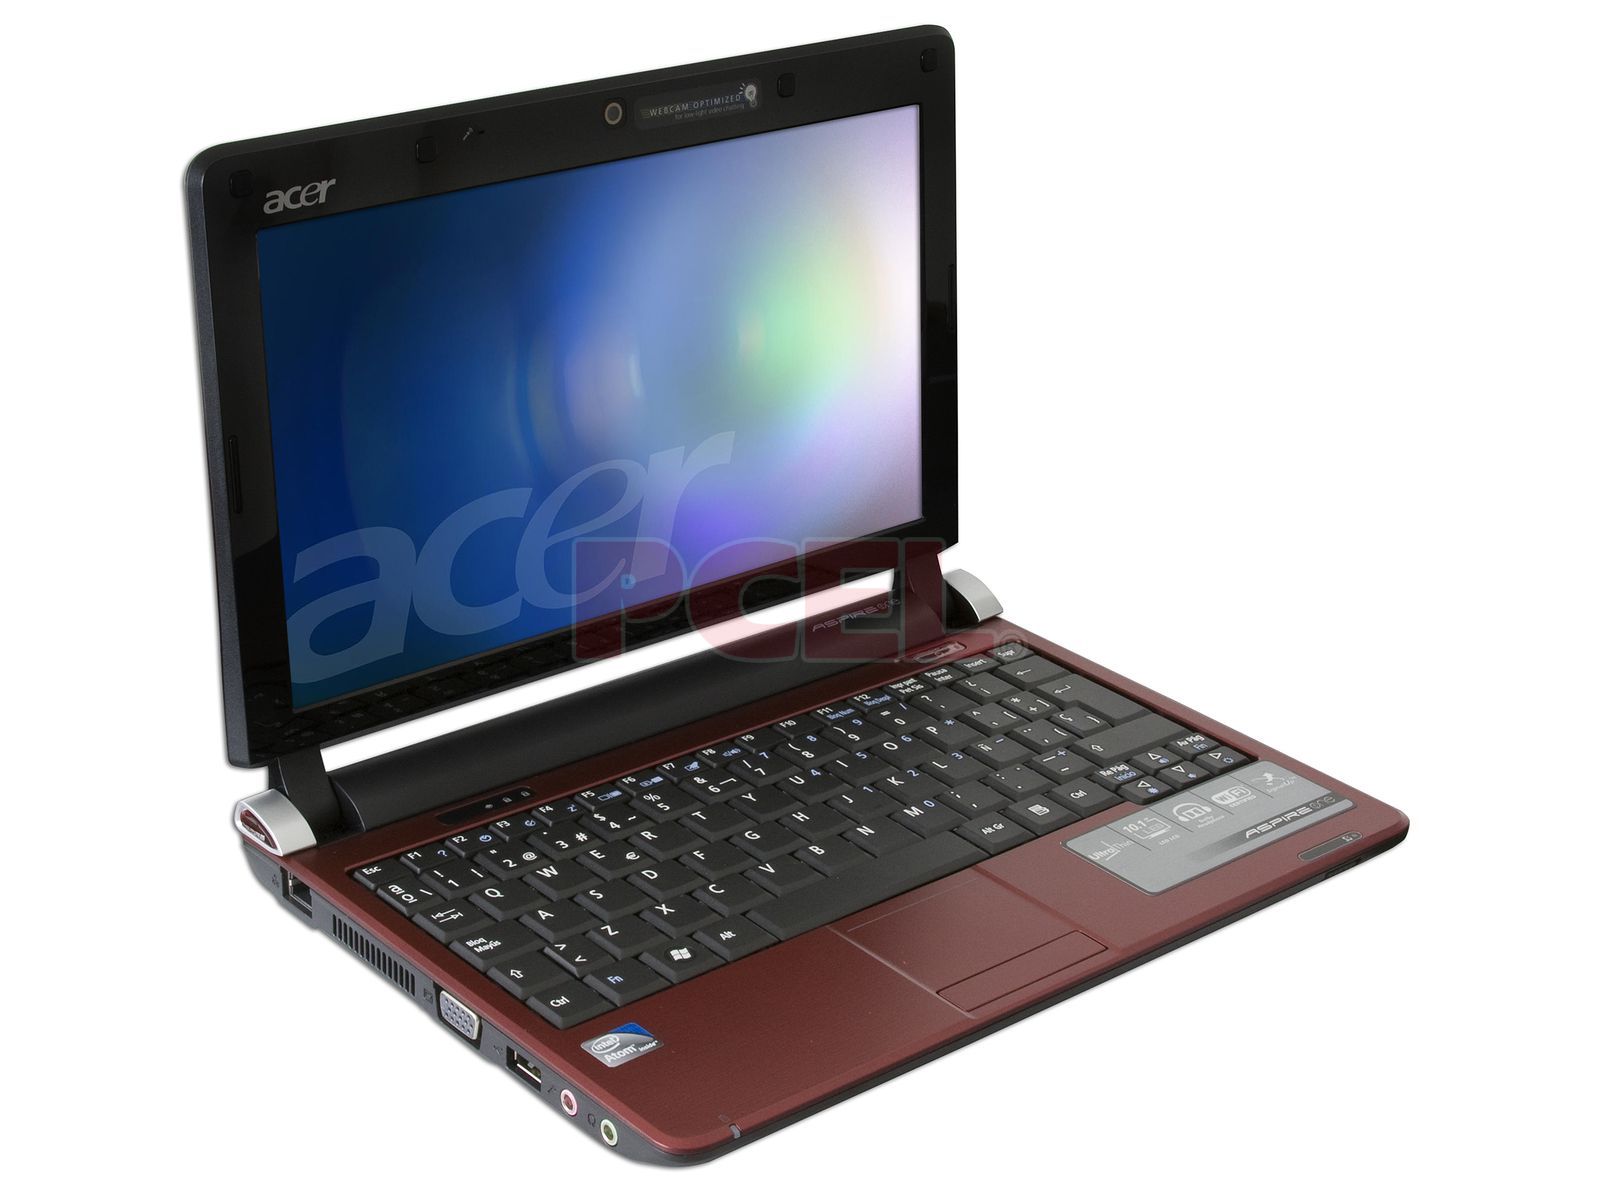 Netbook Acer Aspire One: Procesador Intel Atom N270 ( GHz), Memoria de  1GB DDR II, Almacenamiento Interno 160GB, Pantalla de 